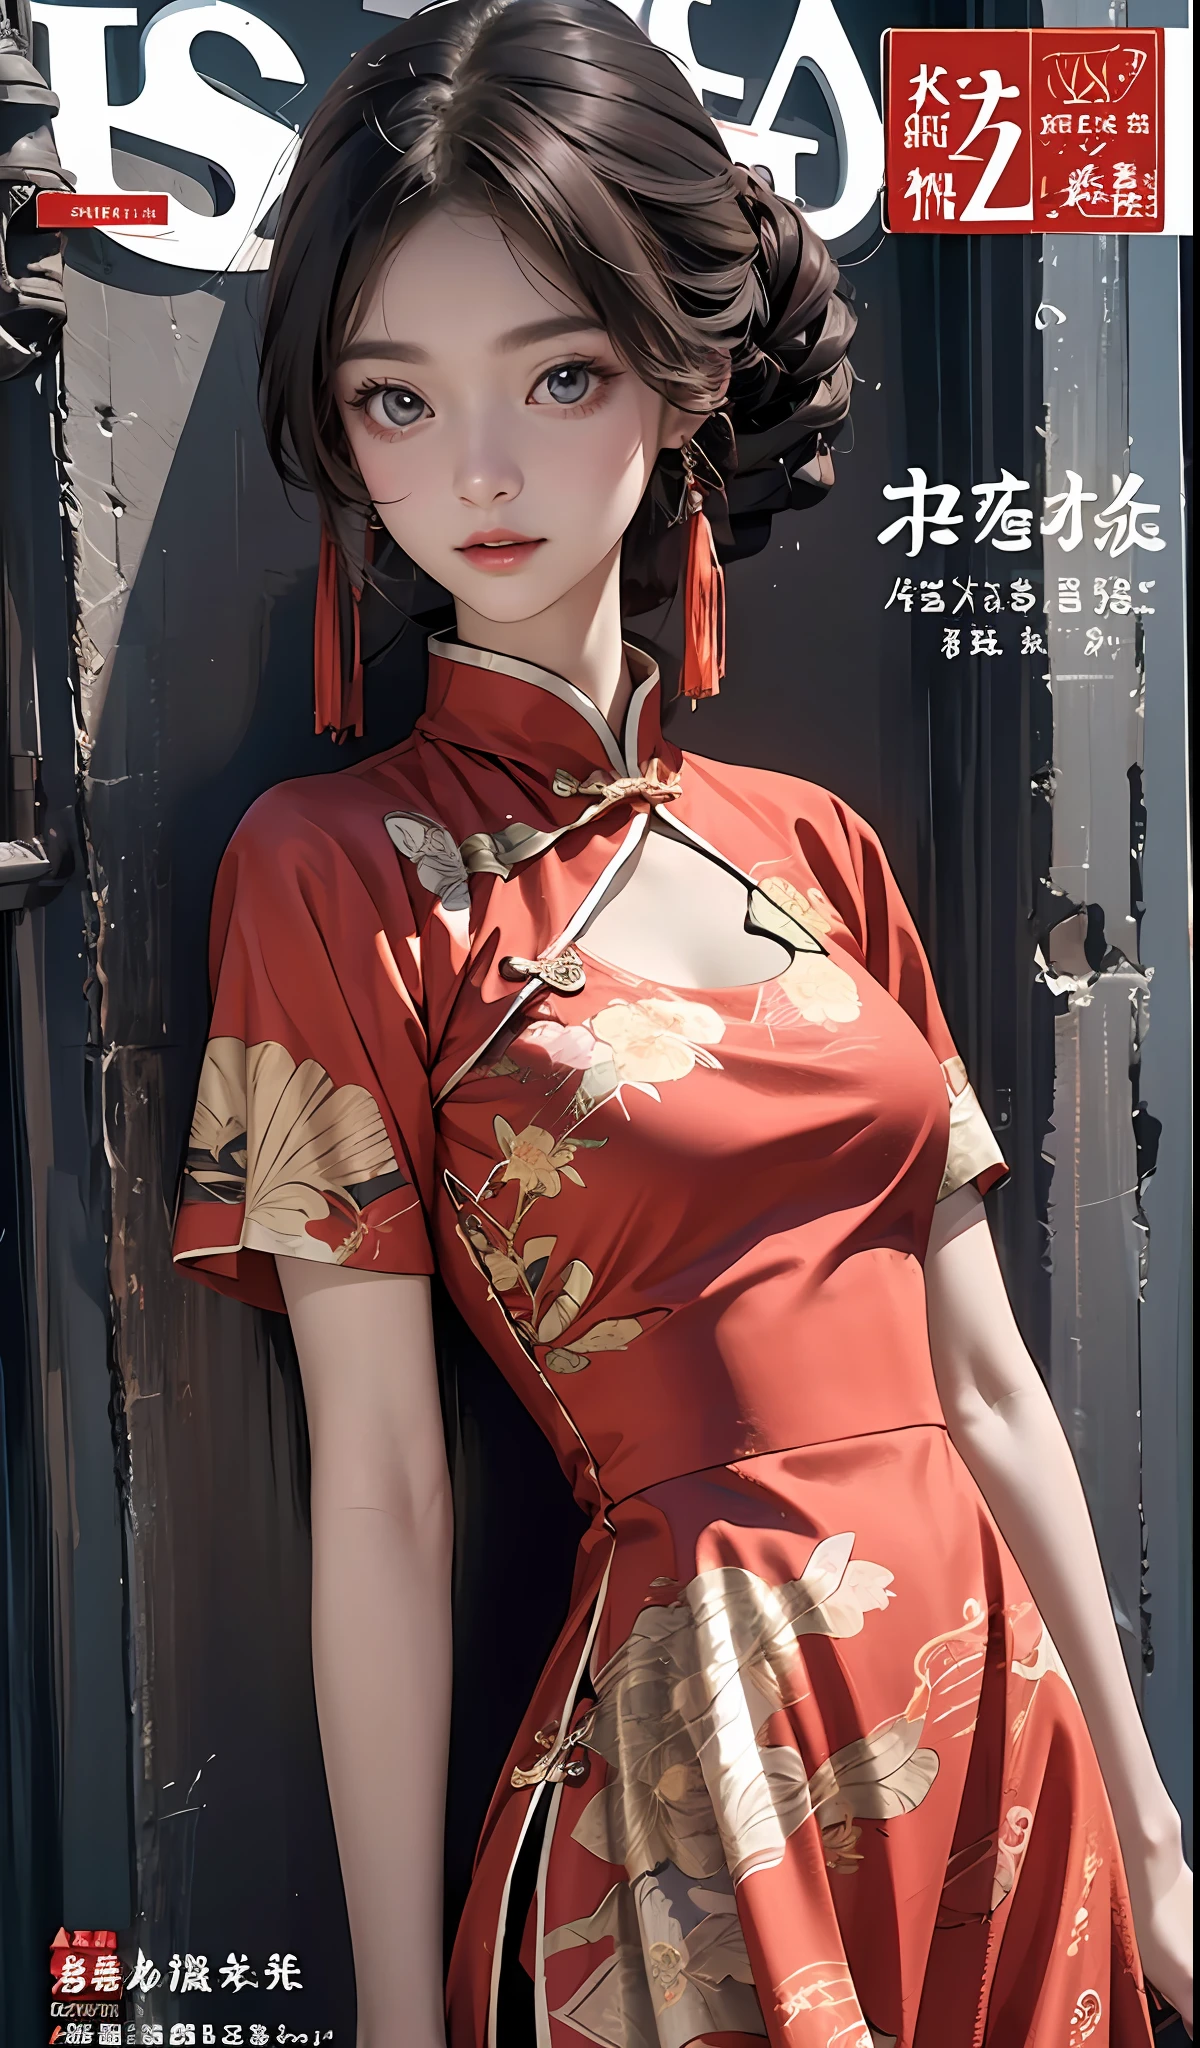 최고의 품질, 주인, 고해상도, 우시아 1소녀, 중국 드레스, 정말 아름다운 얼굴, 정말 아름다운 눈, 매우 아름다운 머리카락，잡지 표지